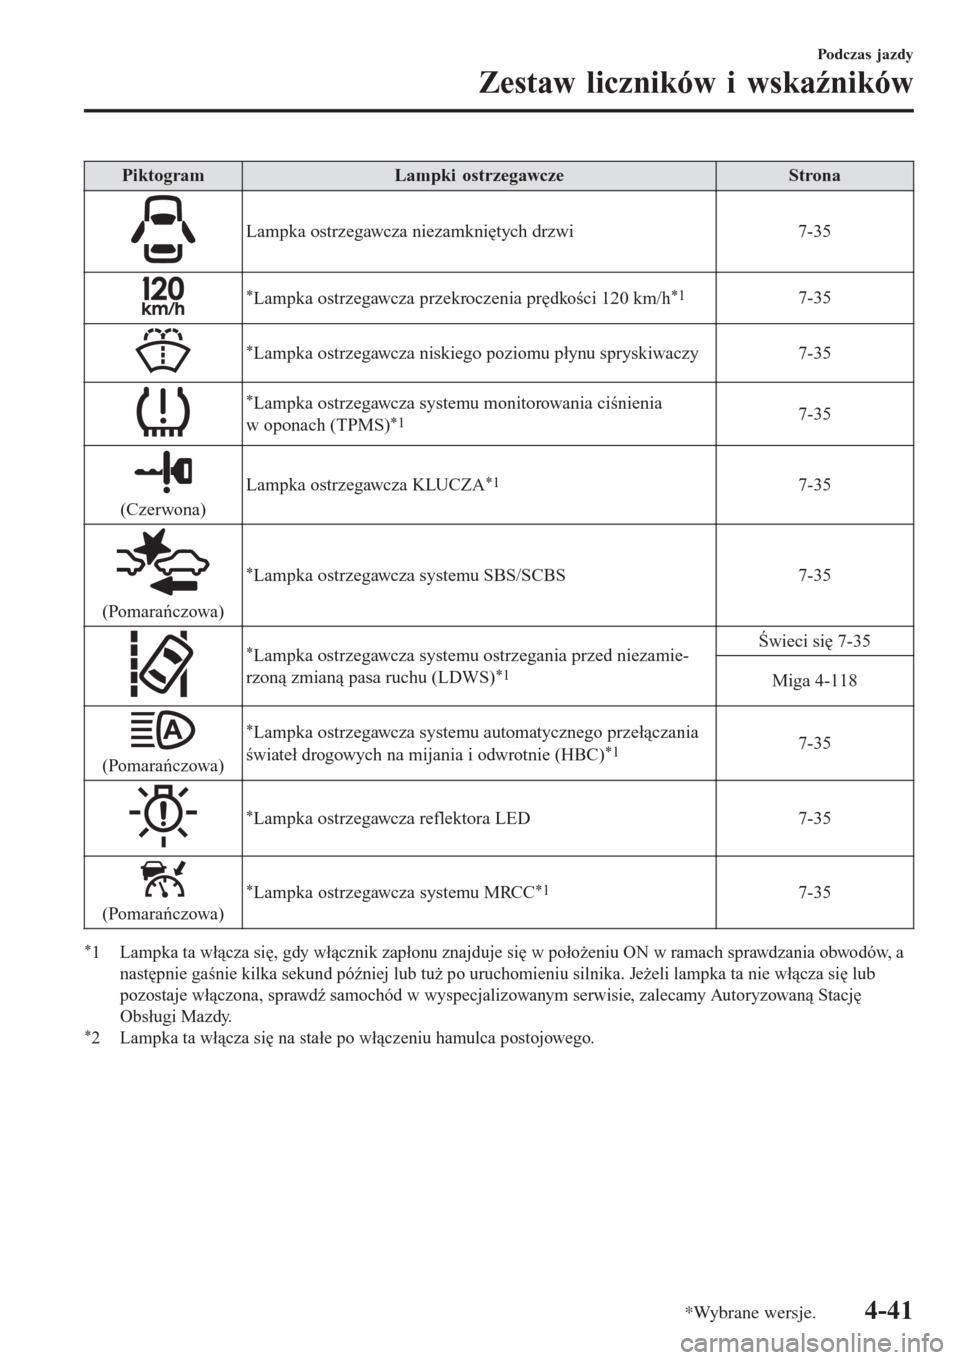 MAZDA MODEL CX-3 2015  Instrukcja Obsługi (in Polish) PiktogramLampki ostrzegawczeStrona
Lampka ostrzegawcza niezamkniętych drzwi 7-35
*Lampka ostrzegawcza przekroczenia prędkości 120 km/h*17-35
*Lampka ostrzegawcza niskiego poziomu płynu spryskiwacz